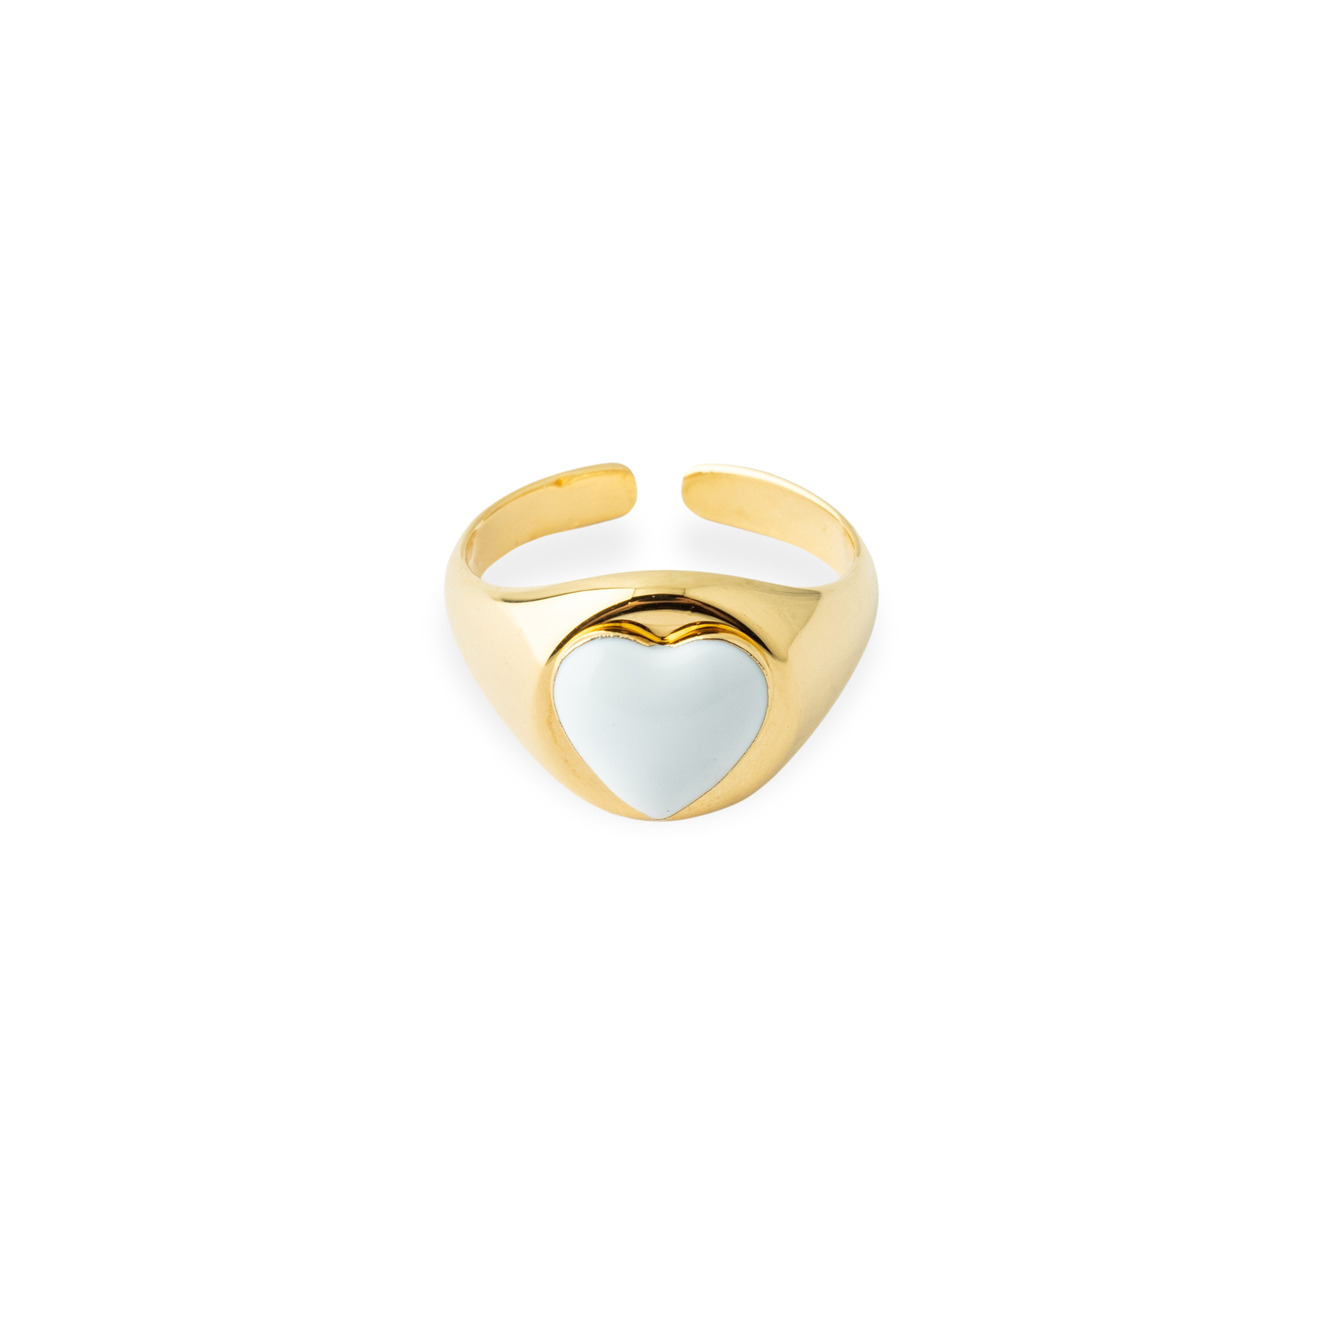 Aqua Золотистое кольцо-печатка с белым сердцем aqua золотистое открытое кольцо с белыми бусинами